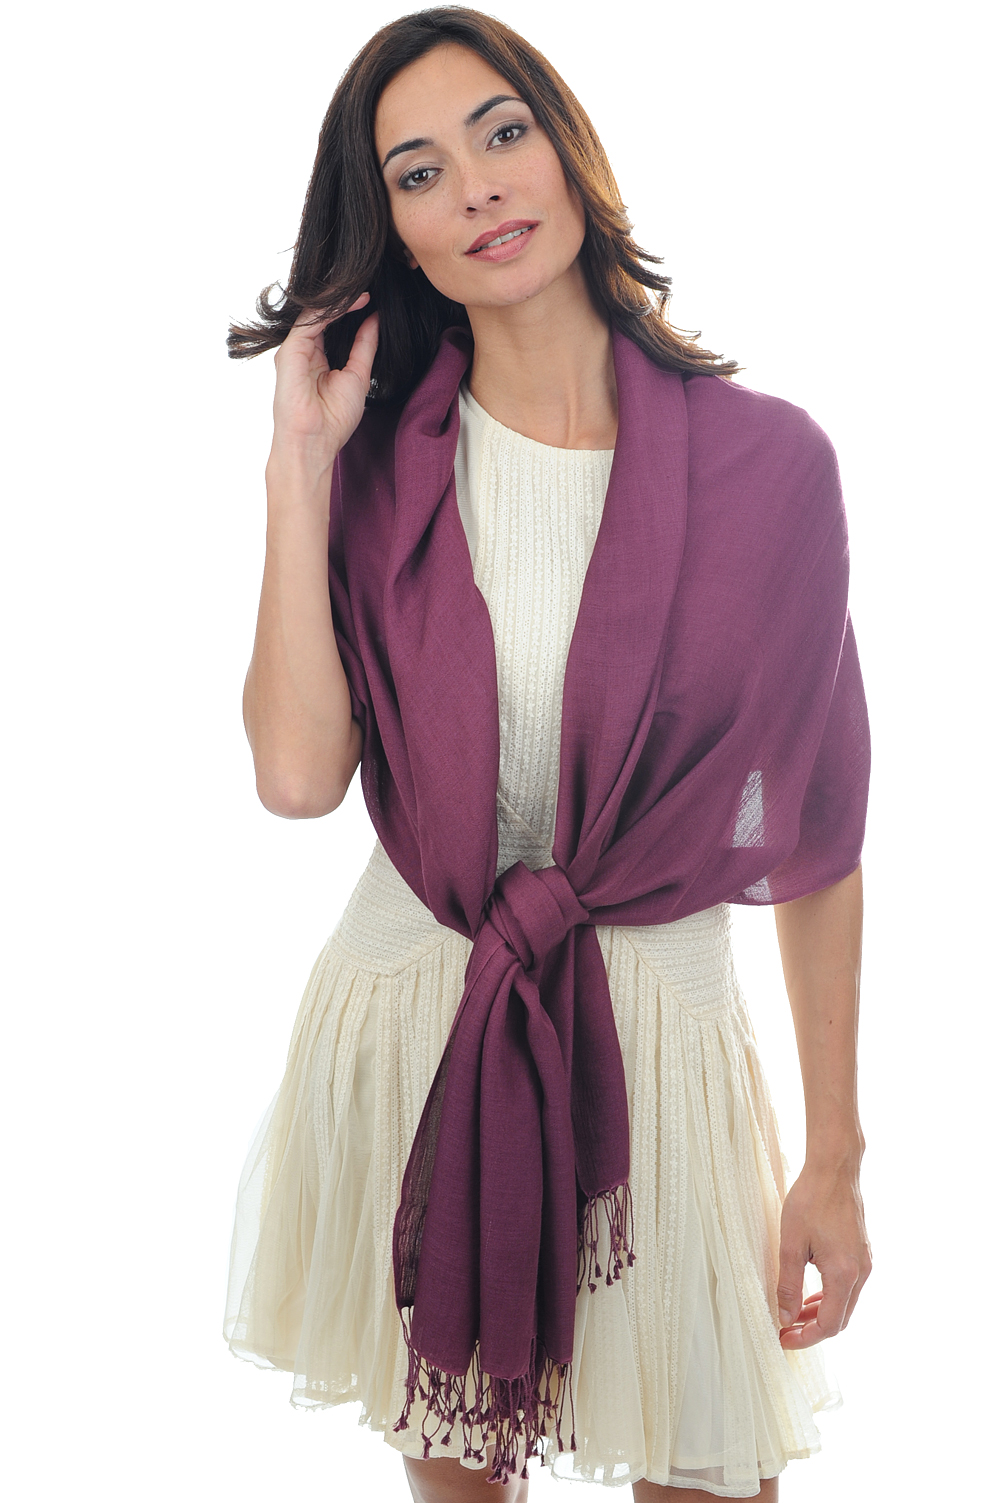 Cashmere & Silk accessories shawls platine prune 201 cm x 71 cm